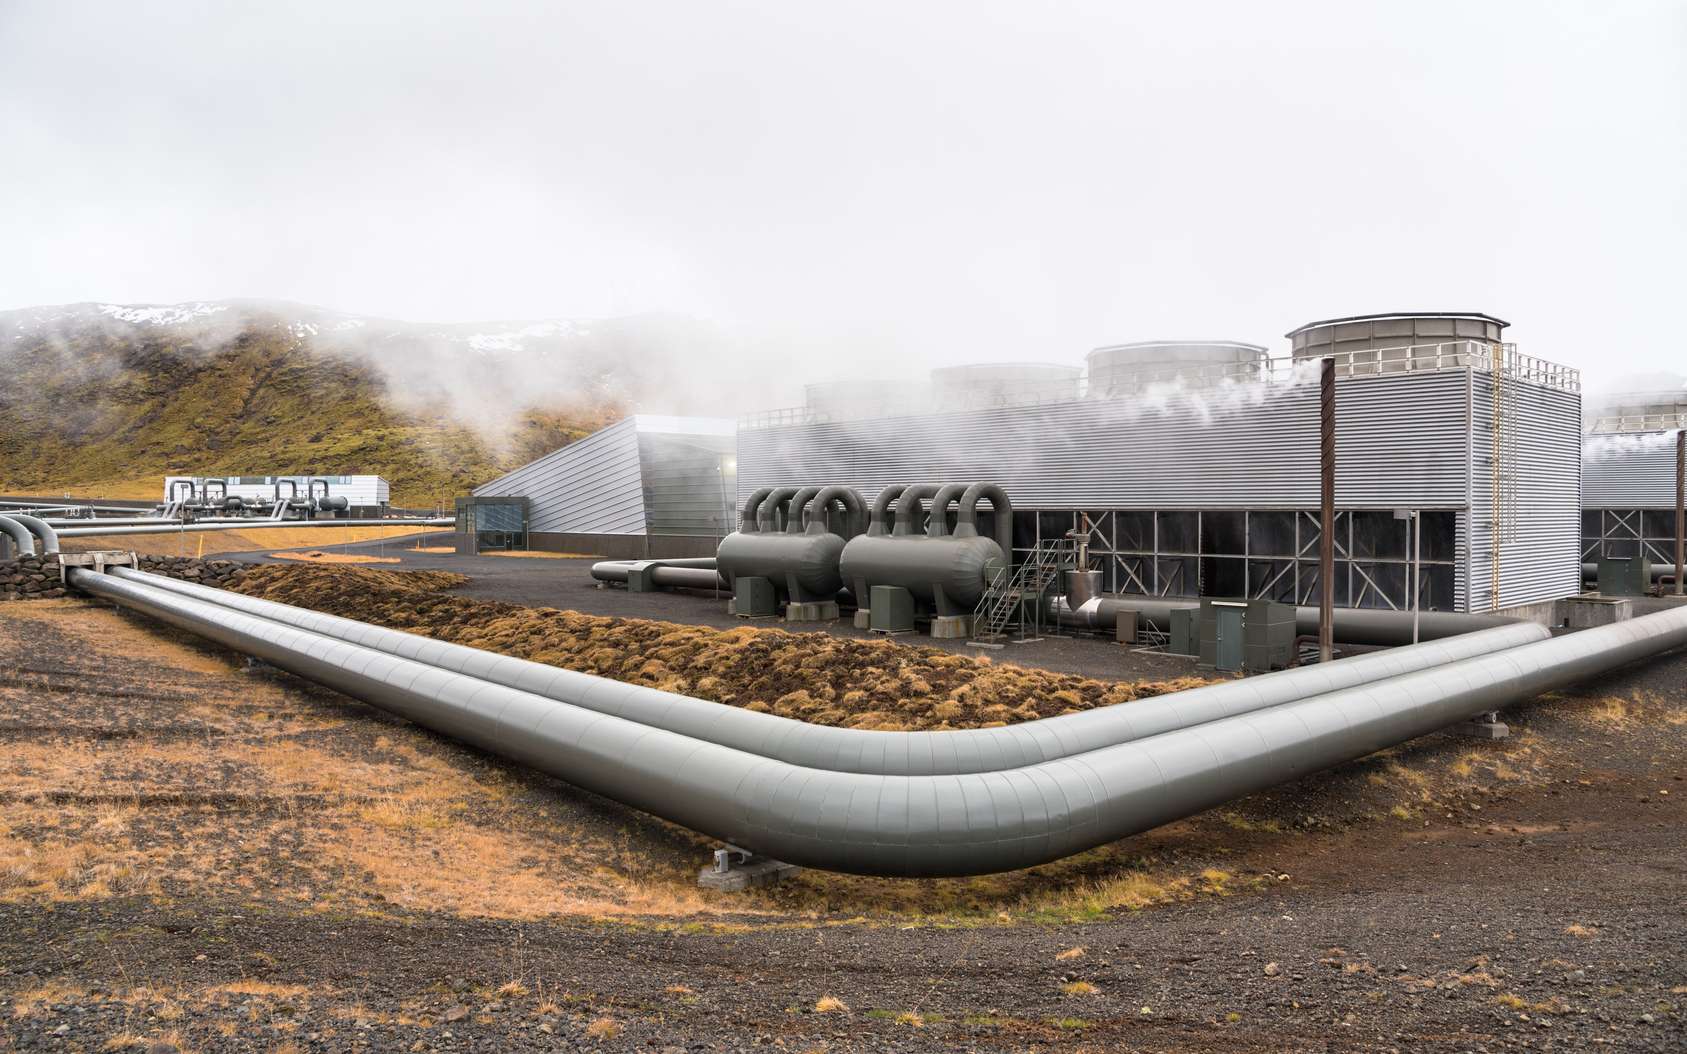 À Cachan, une installation géothermique à la pointe de l’innovation